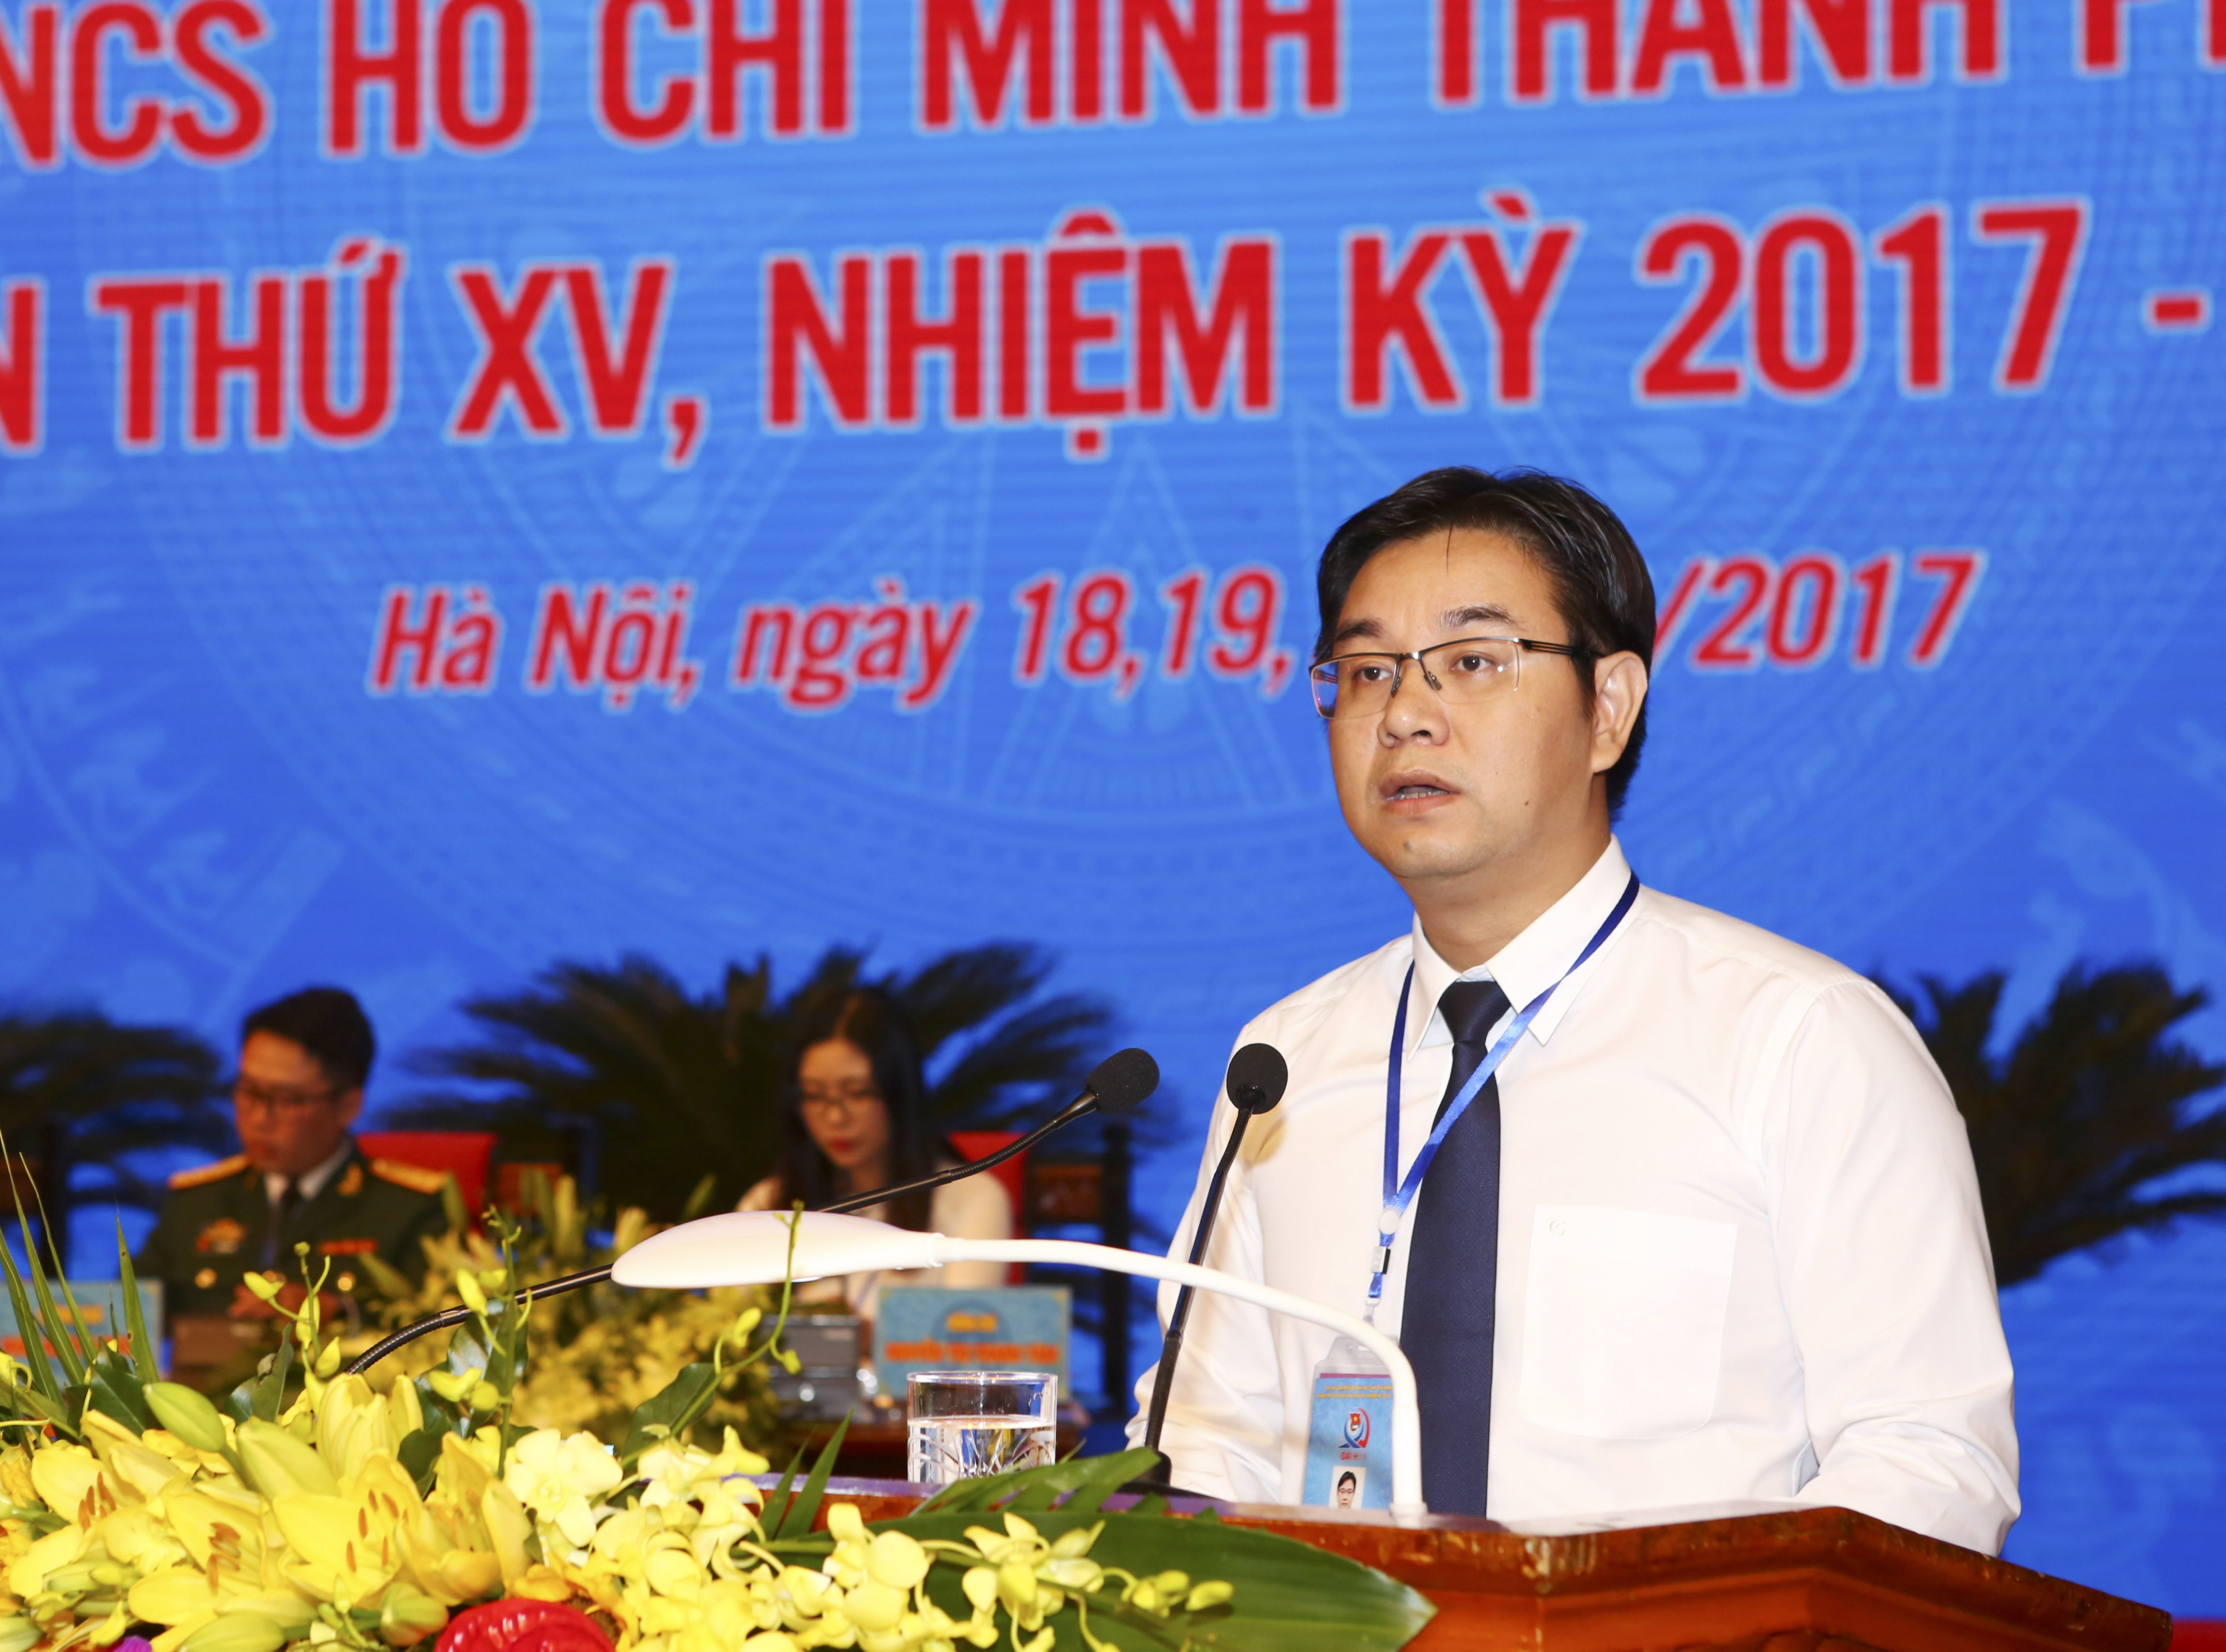 Toàn văn phát biểu Khai mạc Đại hội đại biểu Đoàn TNCS Hồ Chí Minh TP Hà Nội lần thứ XV, nhiệm kỳ 2017 - 2022